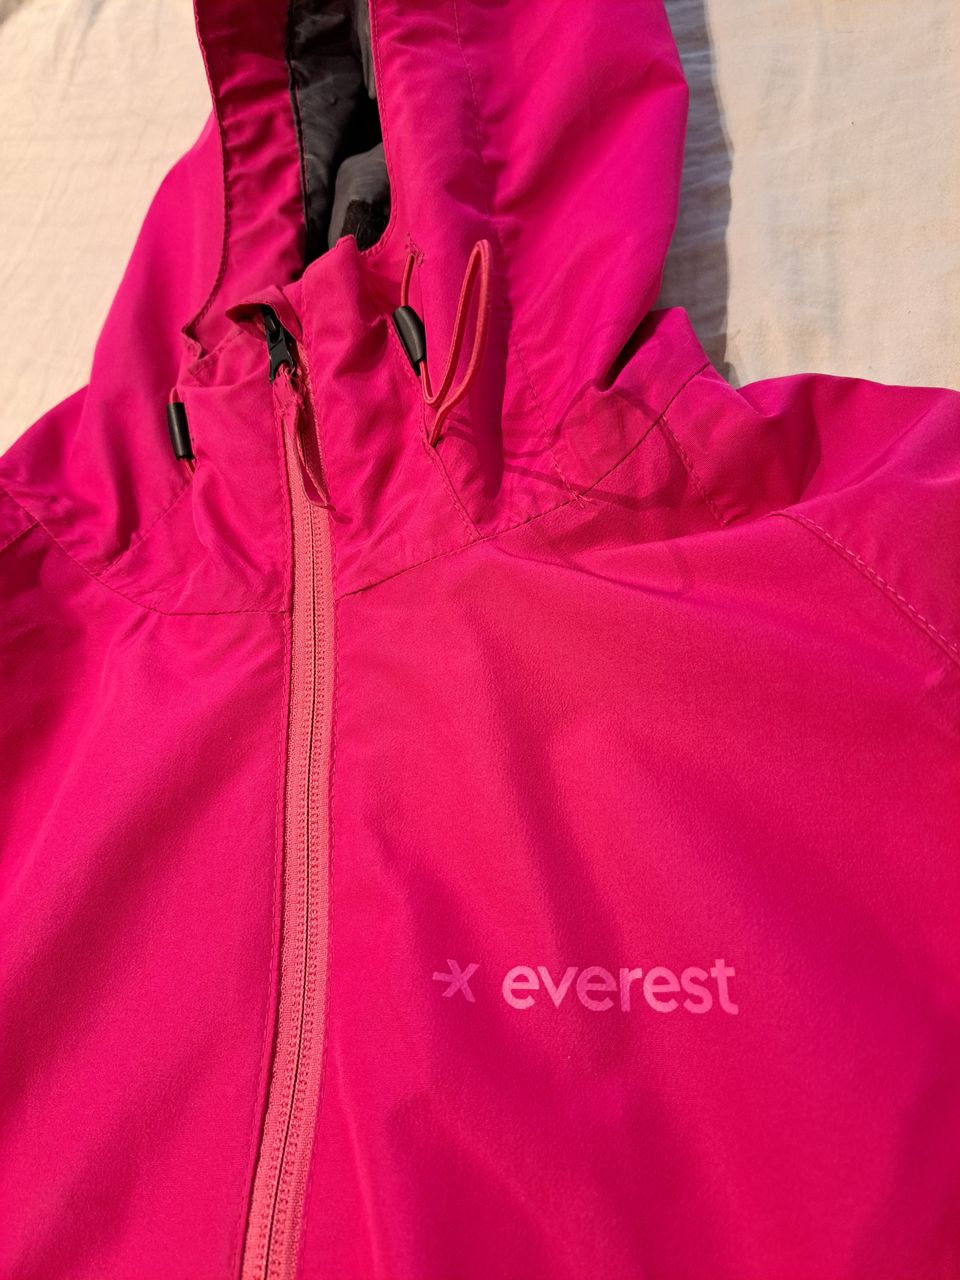 Pinkki Everest tuulitakki koossa S